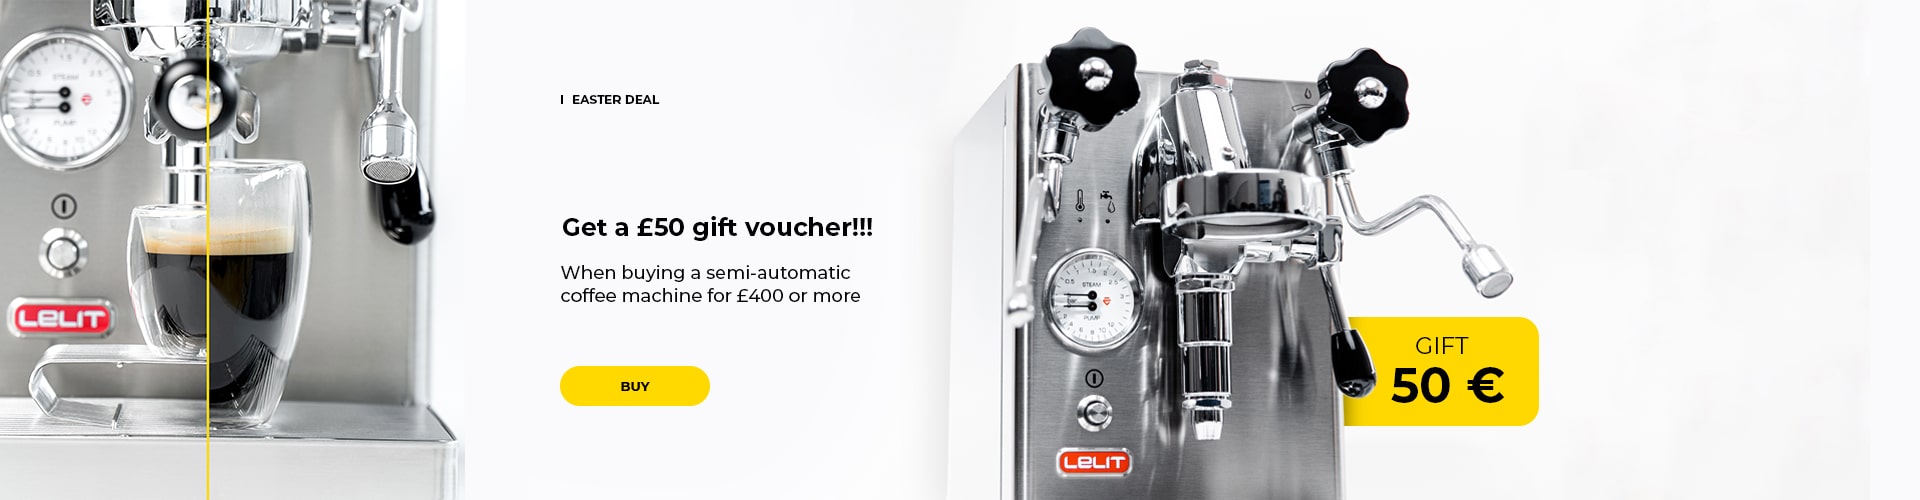 Get a €50 gift voucher!!!